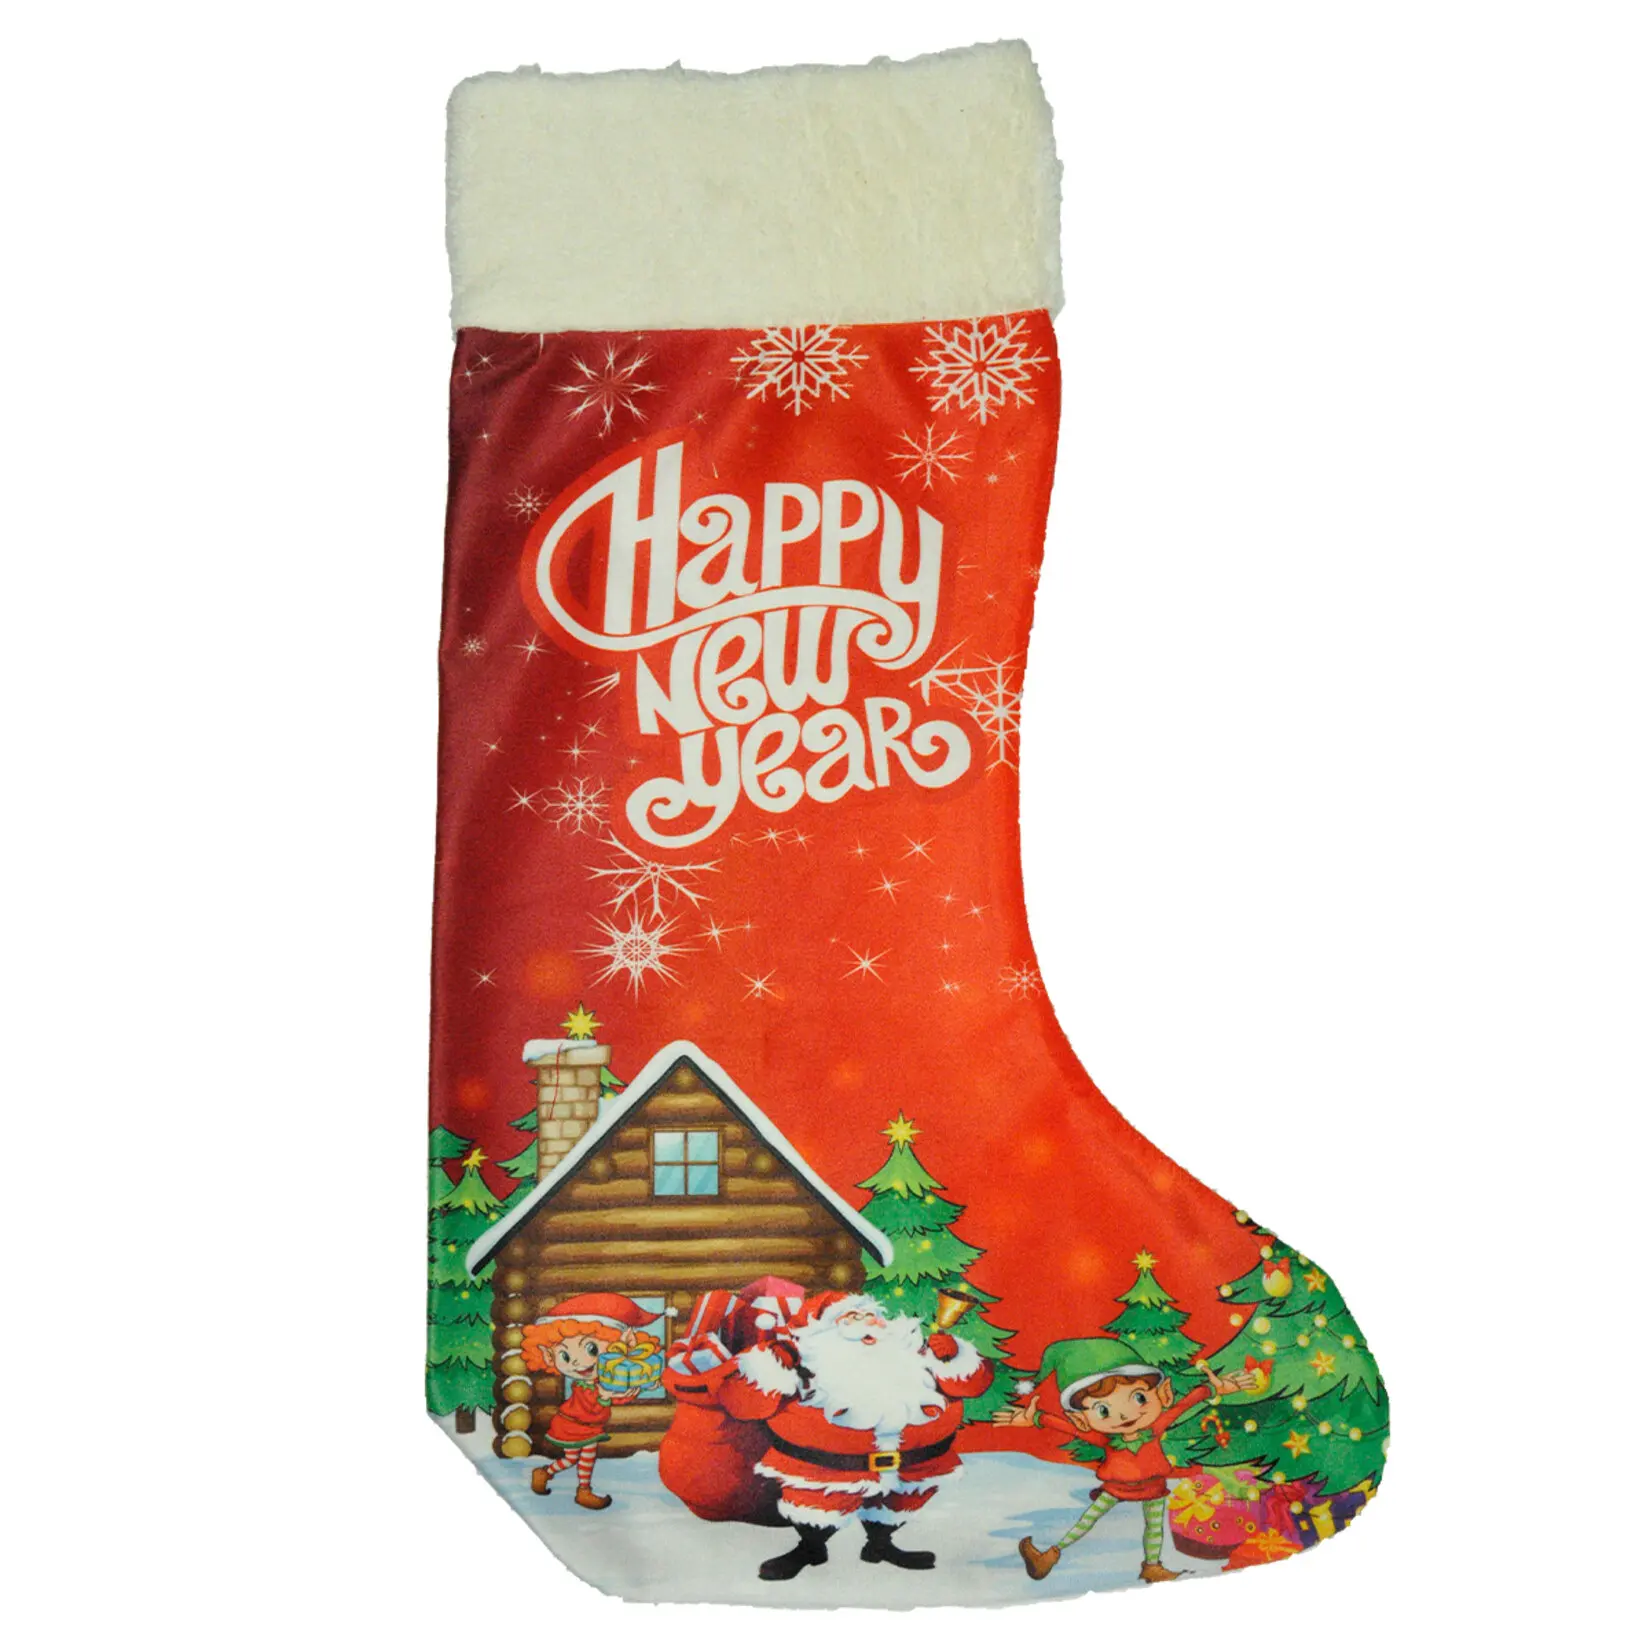 

Mercan Noel Dekor Süs Çorap Özel Kış Gününde Aksesuar Olarak Ödül Edebileceğiniz Harika Bir Hediye